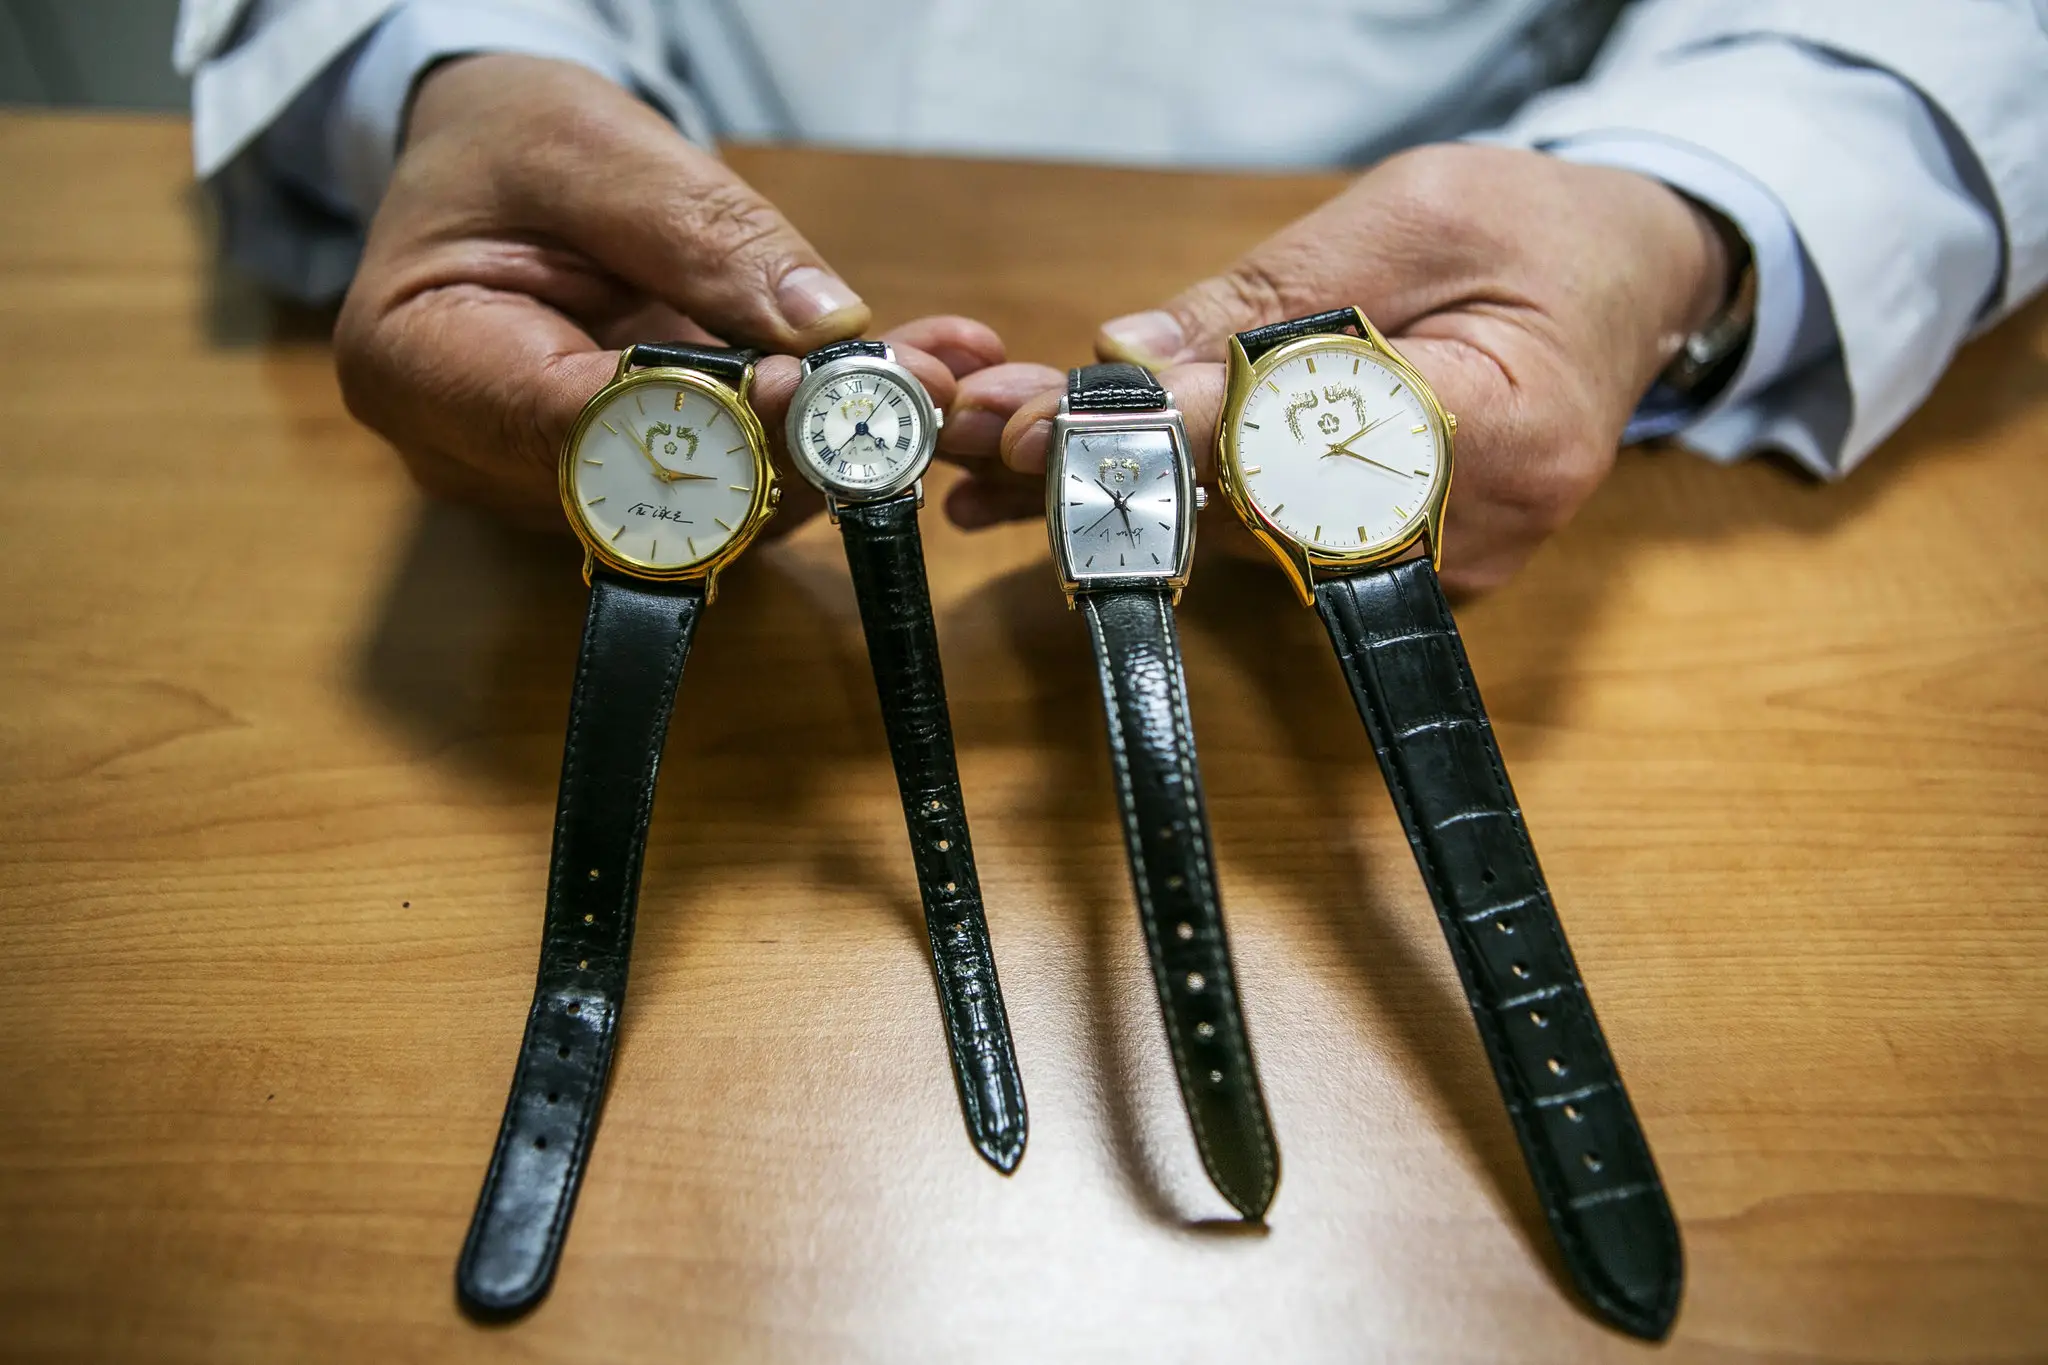 Zegarki z napisem “Korea made” na tarczy, czyli najciekawsze marki z Korei Południowej